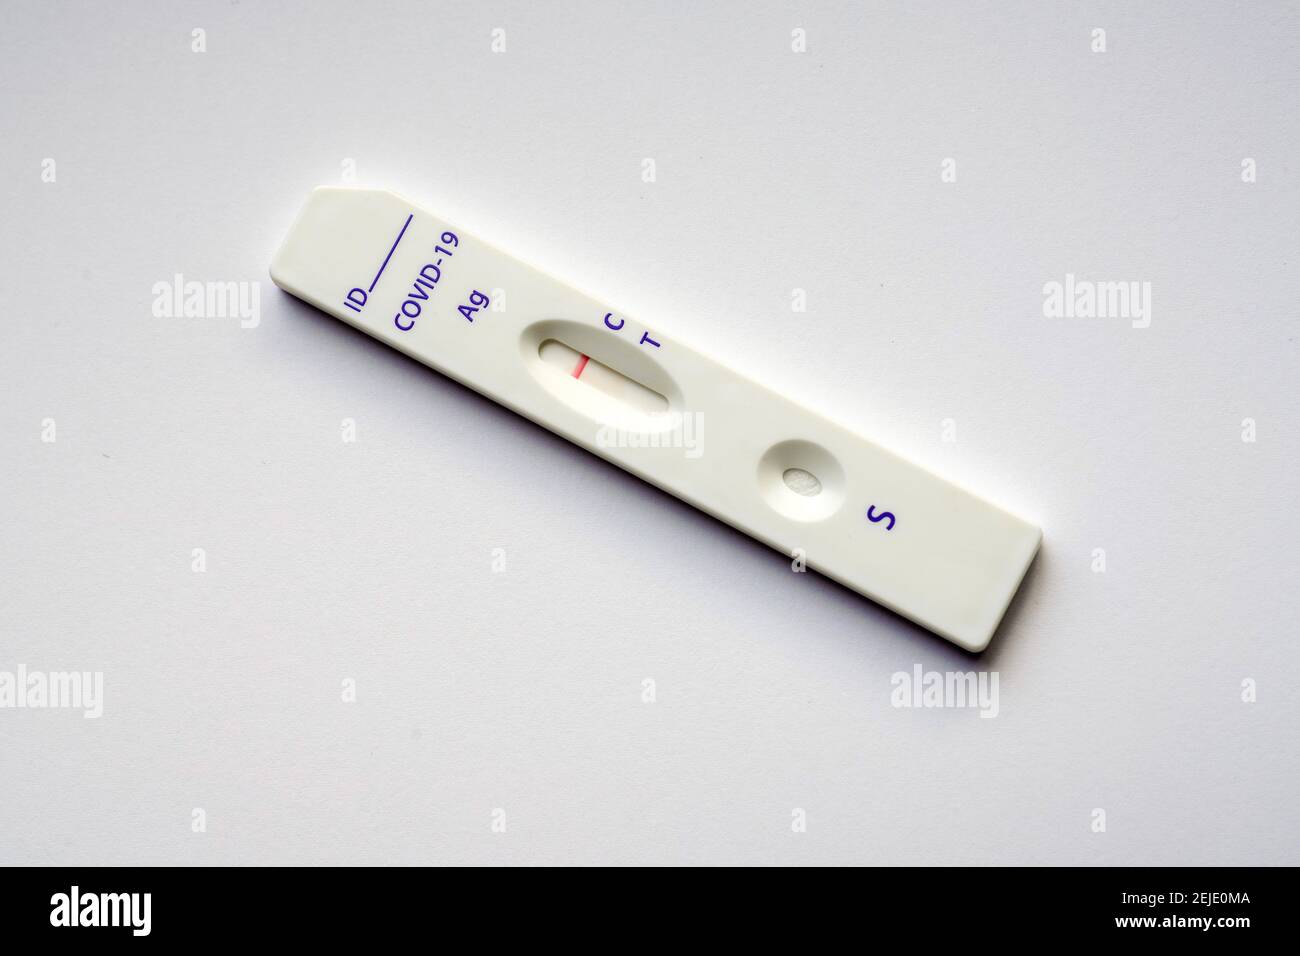 Corona-Schnelltest: Die Testkassette zeigt einen negativen Covid-19-Antigen-Schnelltest der chinesischen Firma Joinstar Biomedical mit einer Speichelprobe. --- Corona-Schnelltest: Testkassette zeigt einen durch eine Speichelprobe vorgegebenen negativen Covid-19 Antigen-Schnelltest der chinesischen Firma Joinstar Biomedical. Stockfoto